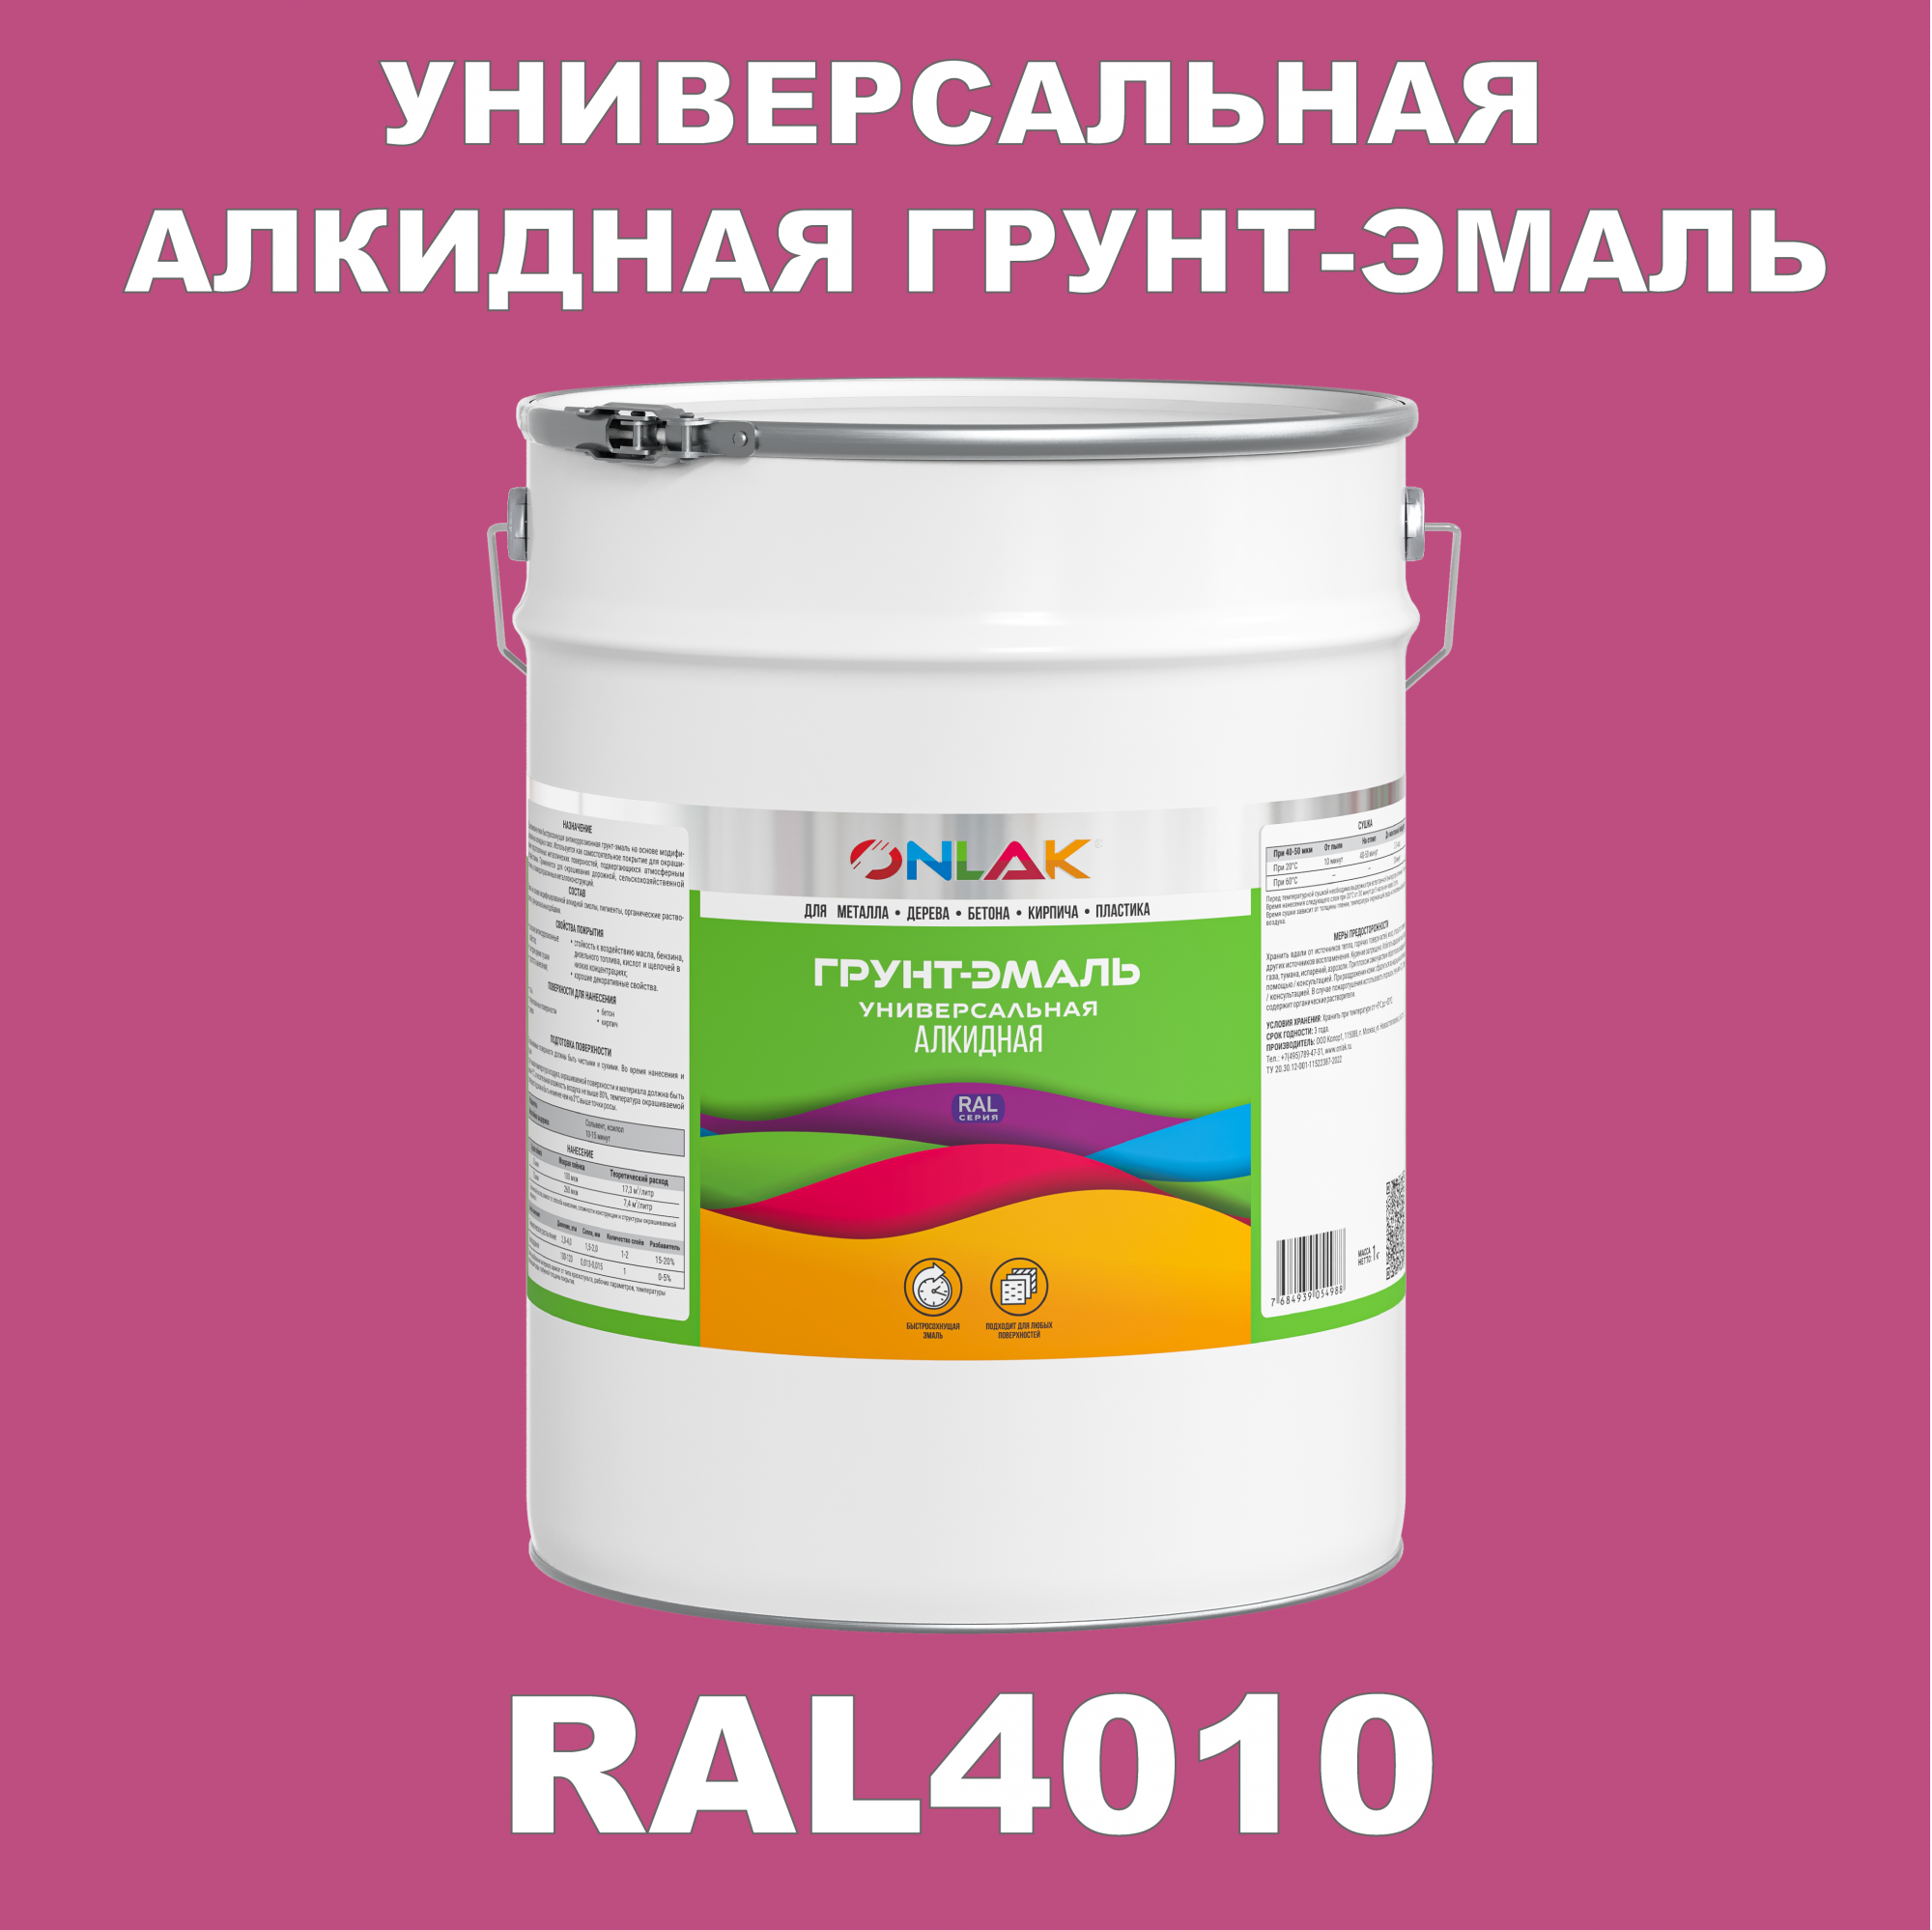 Грунт-эмаль ONLAK 1К RAL4010 антикоррозионная алкидная по металлу по ржавчине 20 кг антикоррозионная грунт эмаль onlak ral 4009 фиолетовый 593 мл